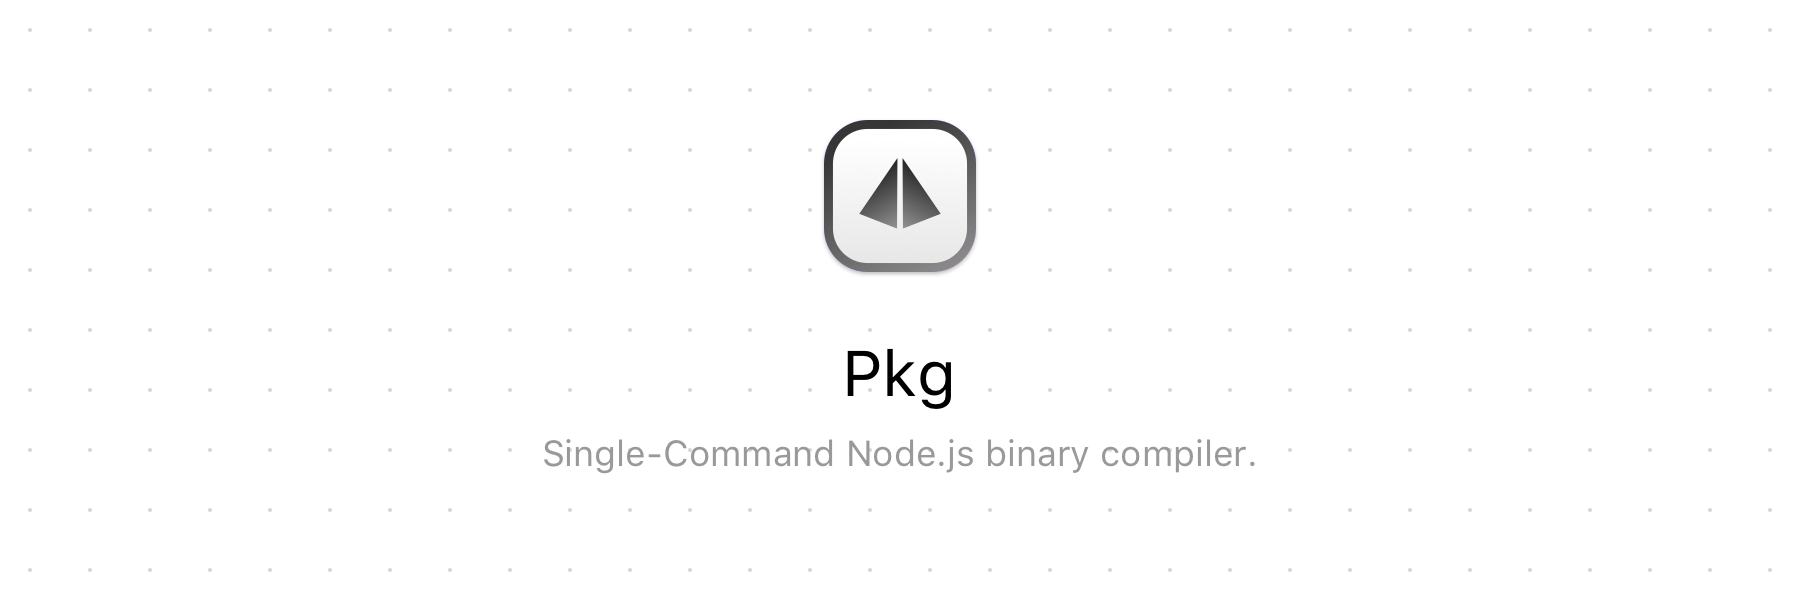 Pkg Logo - pkg